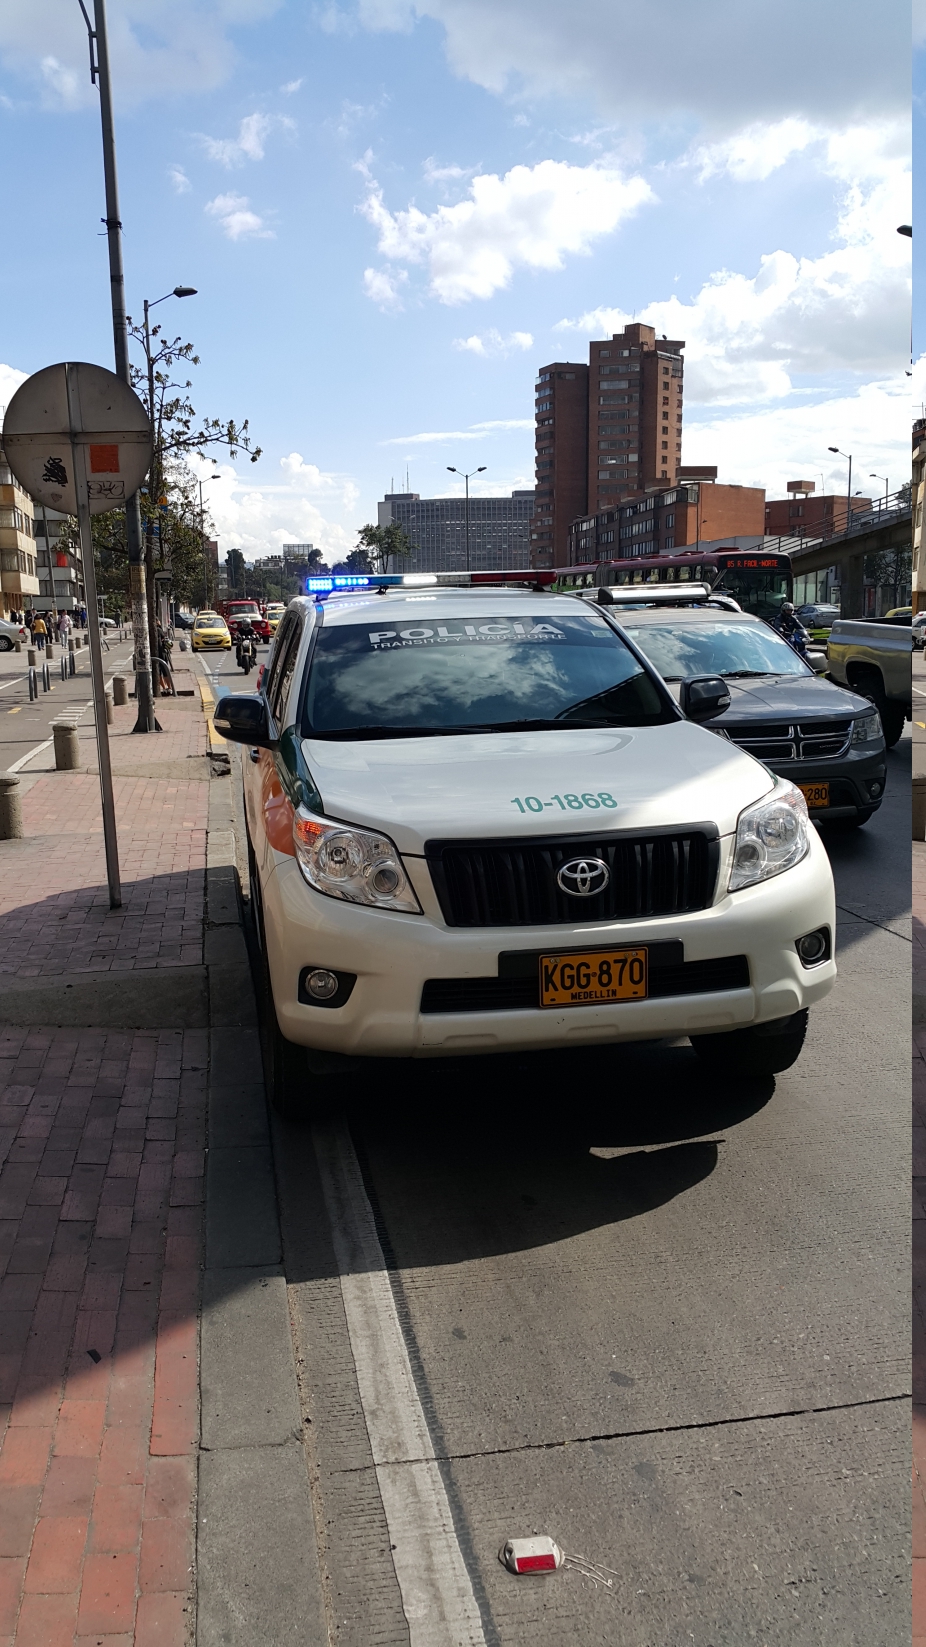 Carro de la Policía de Tránsito estacionado, sin conductor, en la carrera 30 con calle 40a, Bogotá, 23 de febrero de 2016